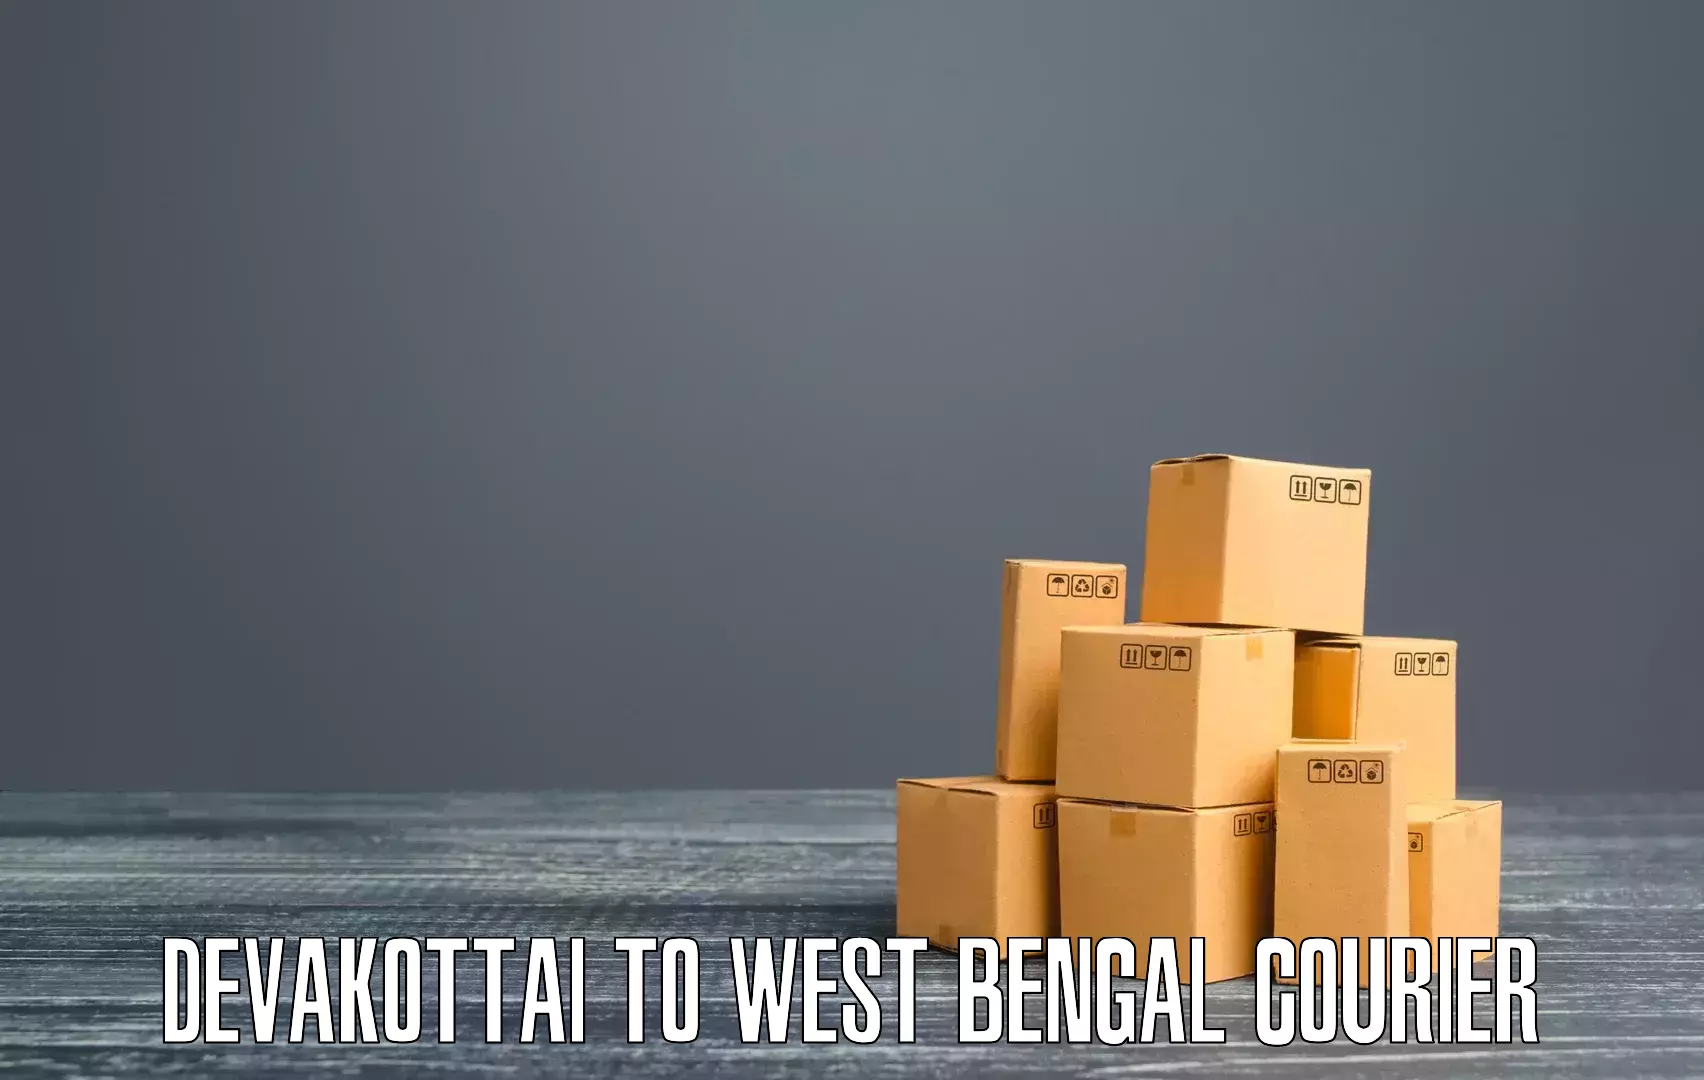 Efficient cargo services Devakottai to West Bengal